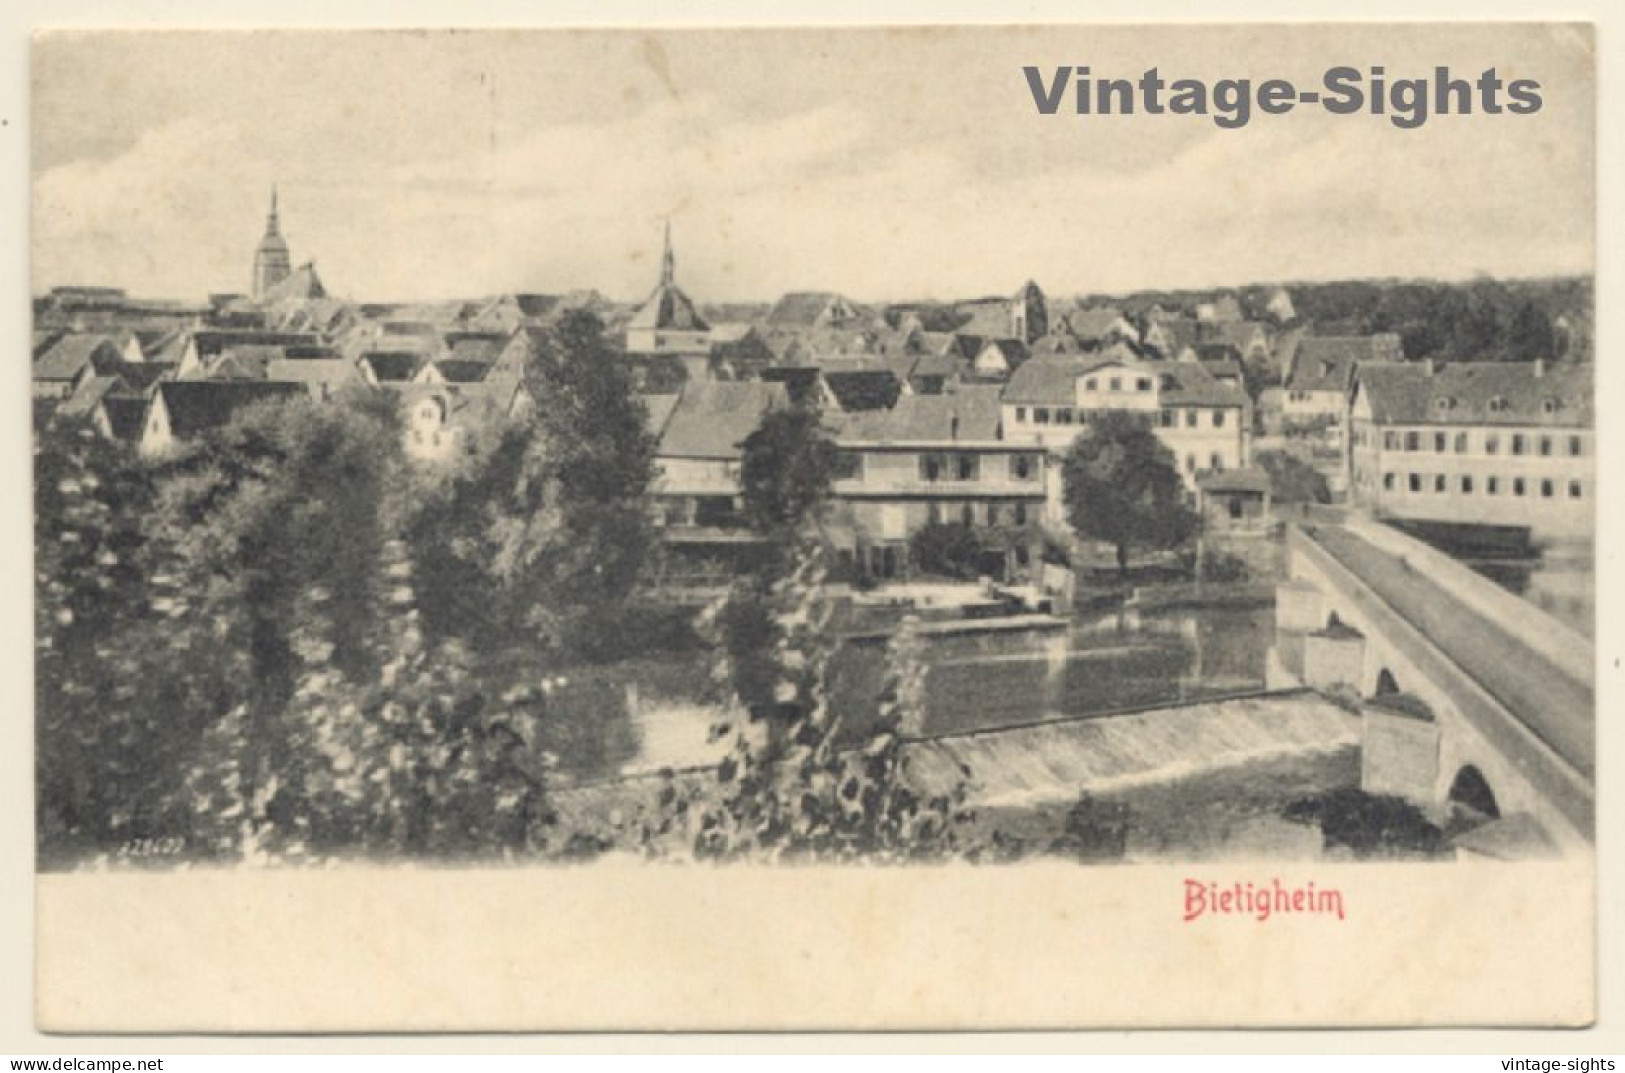 Bietigheim / Germany: Total View View (Vintage PC 1906) - Bietigheim-Bissingen